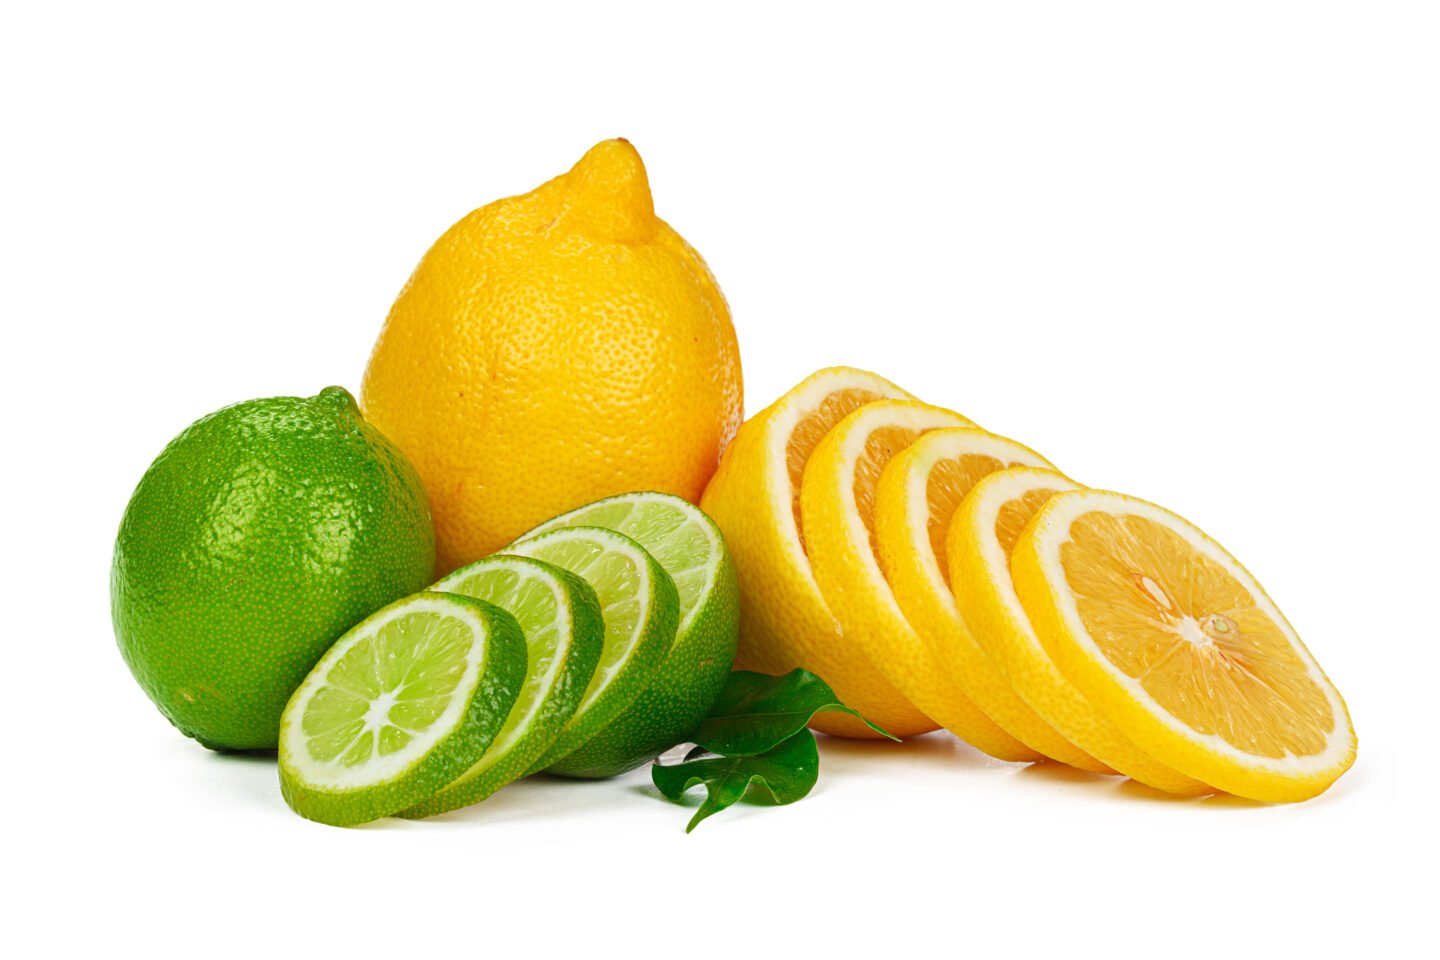 lemon and lime together